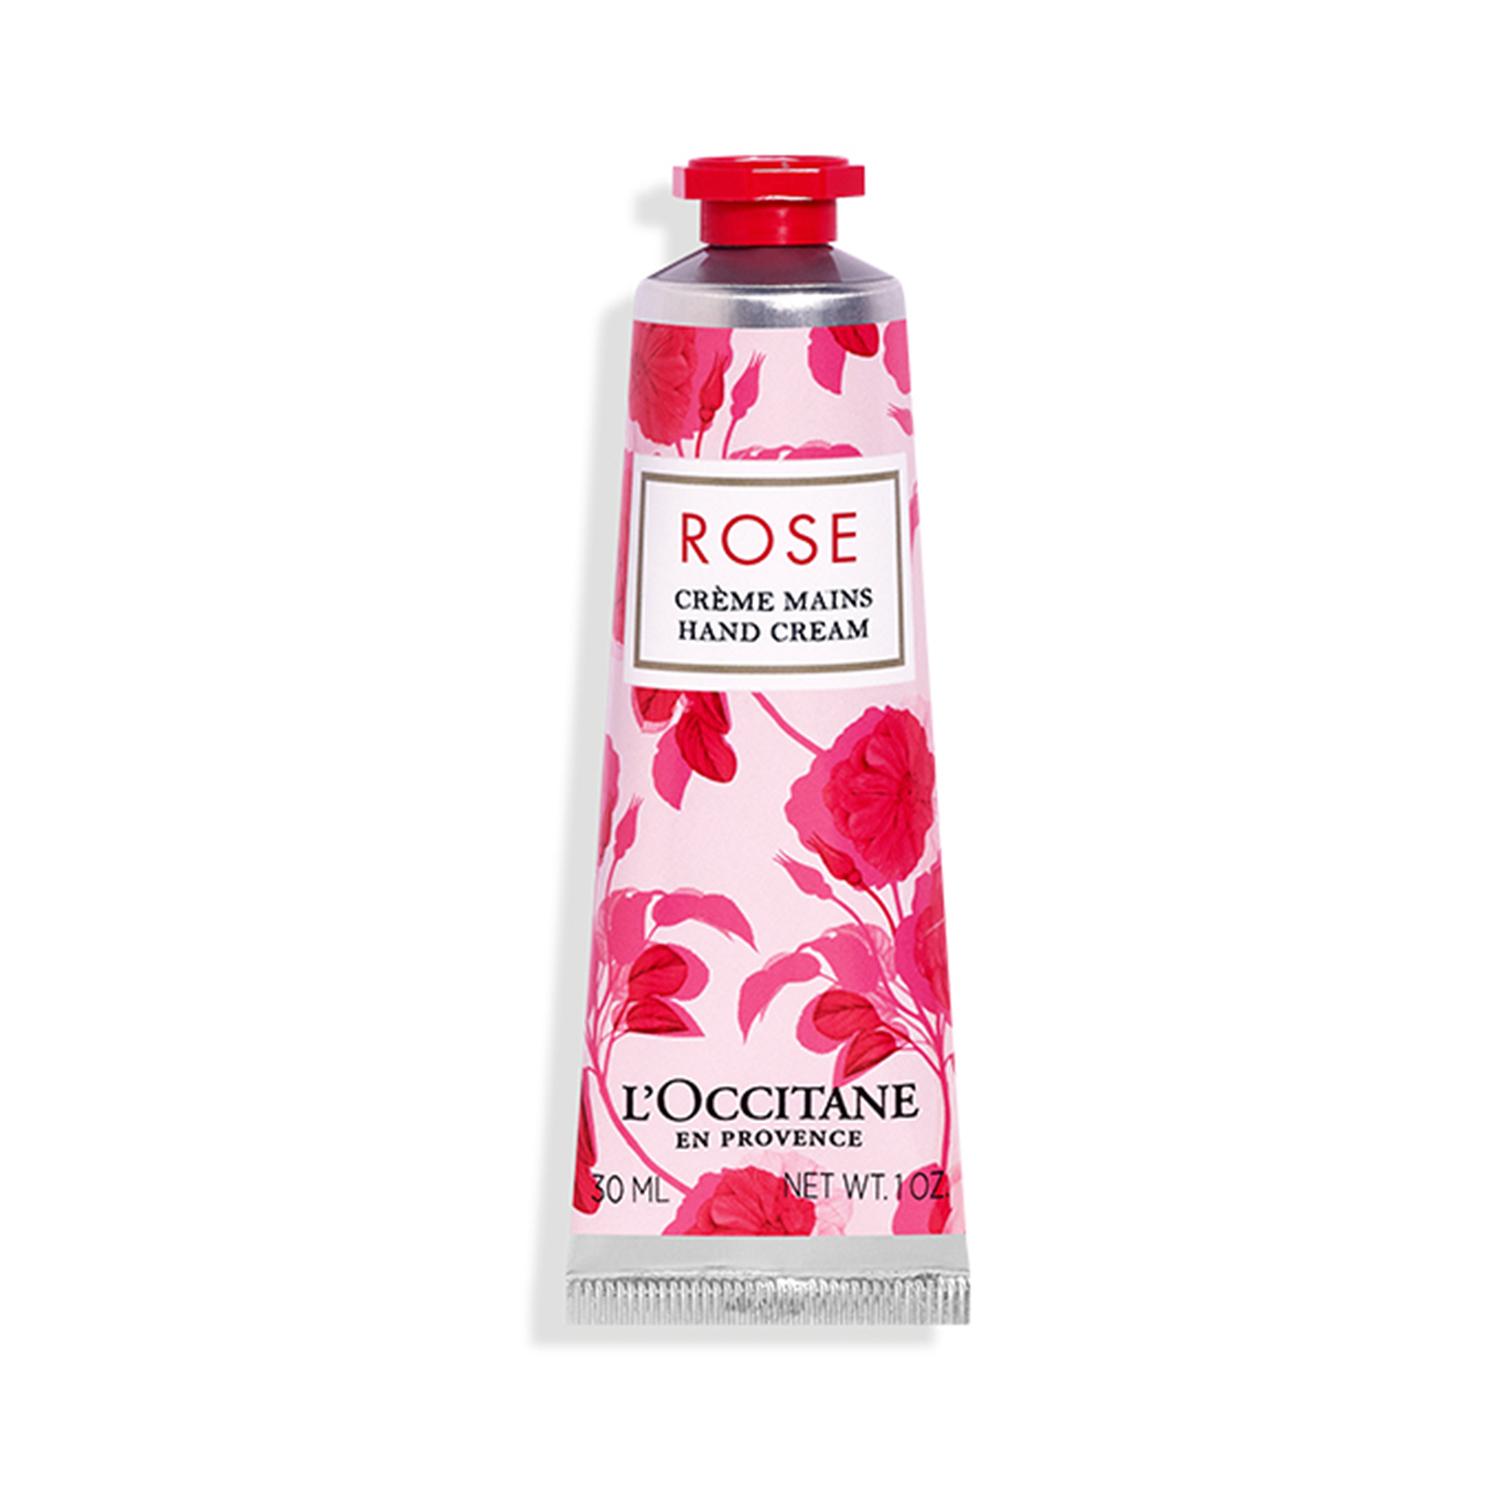 L'occitane Rose Hand Cream - (30ml)